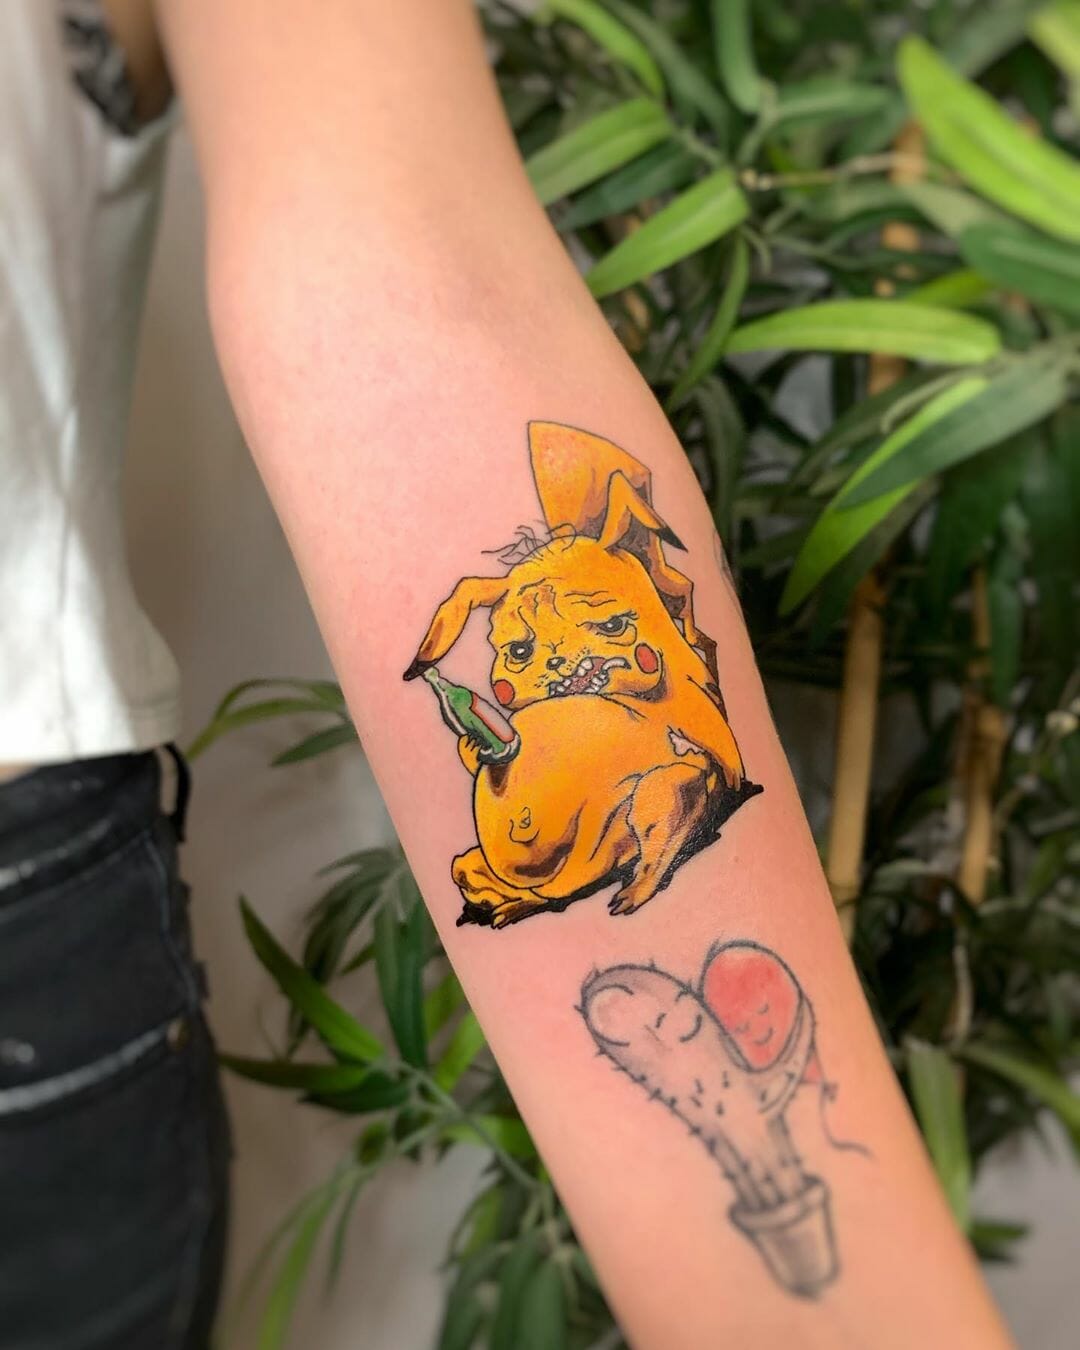 Ragged Drunk Pikachu Tattoo